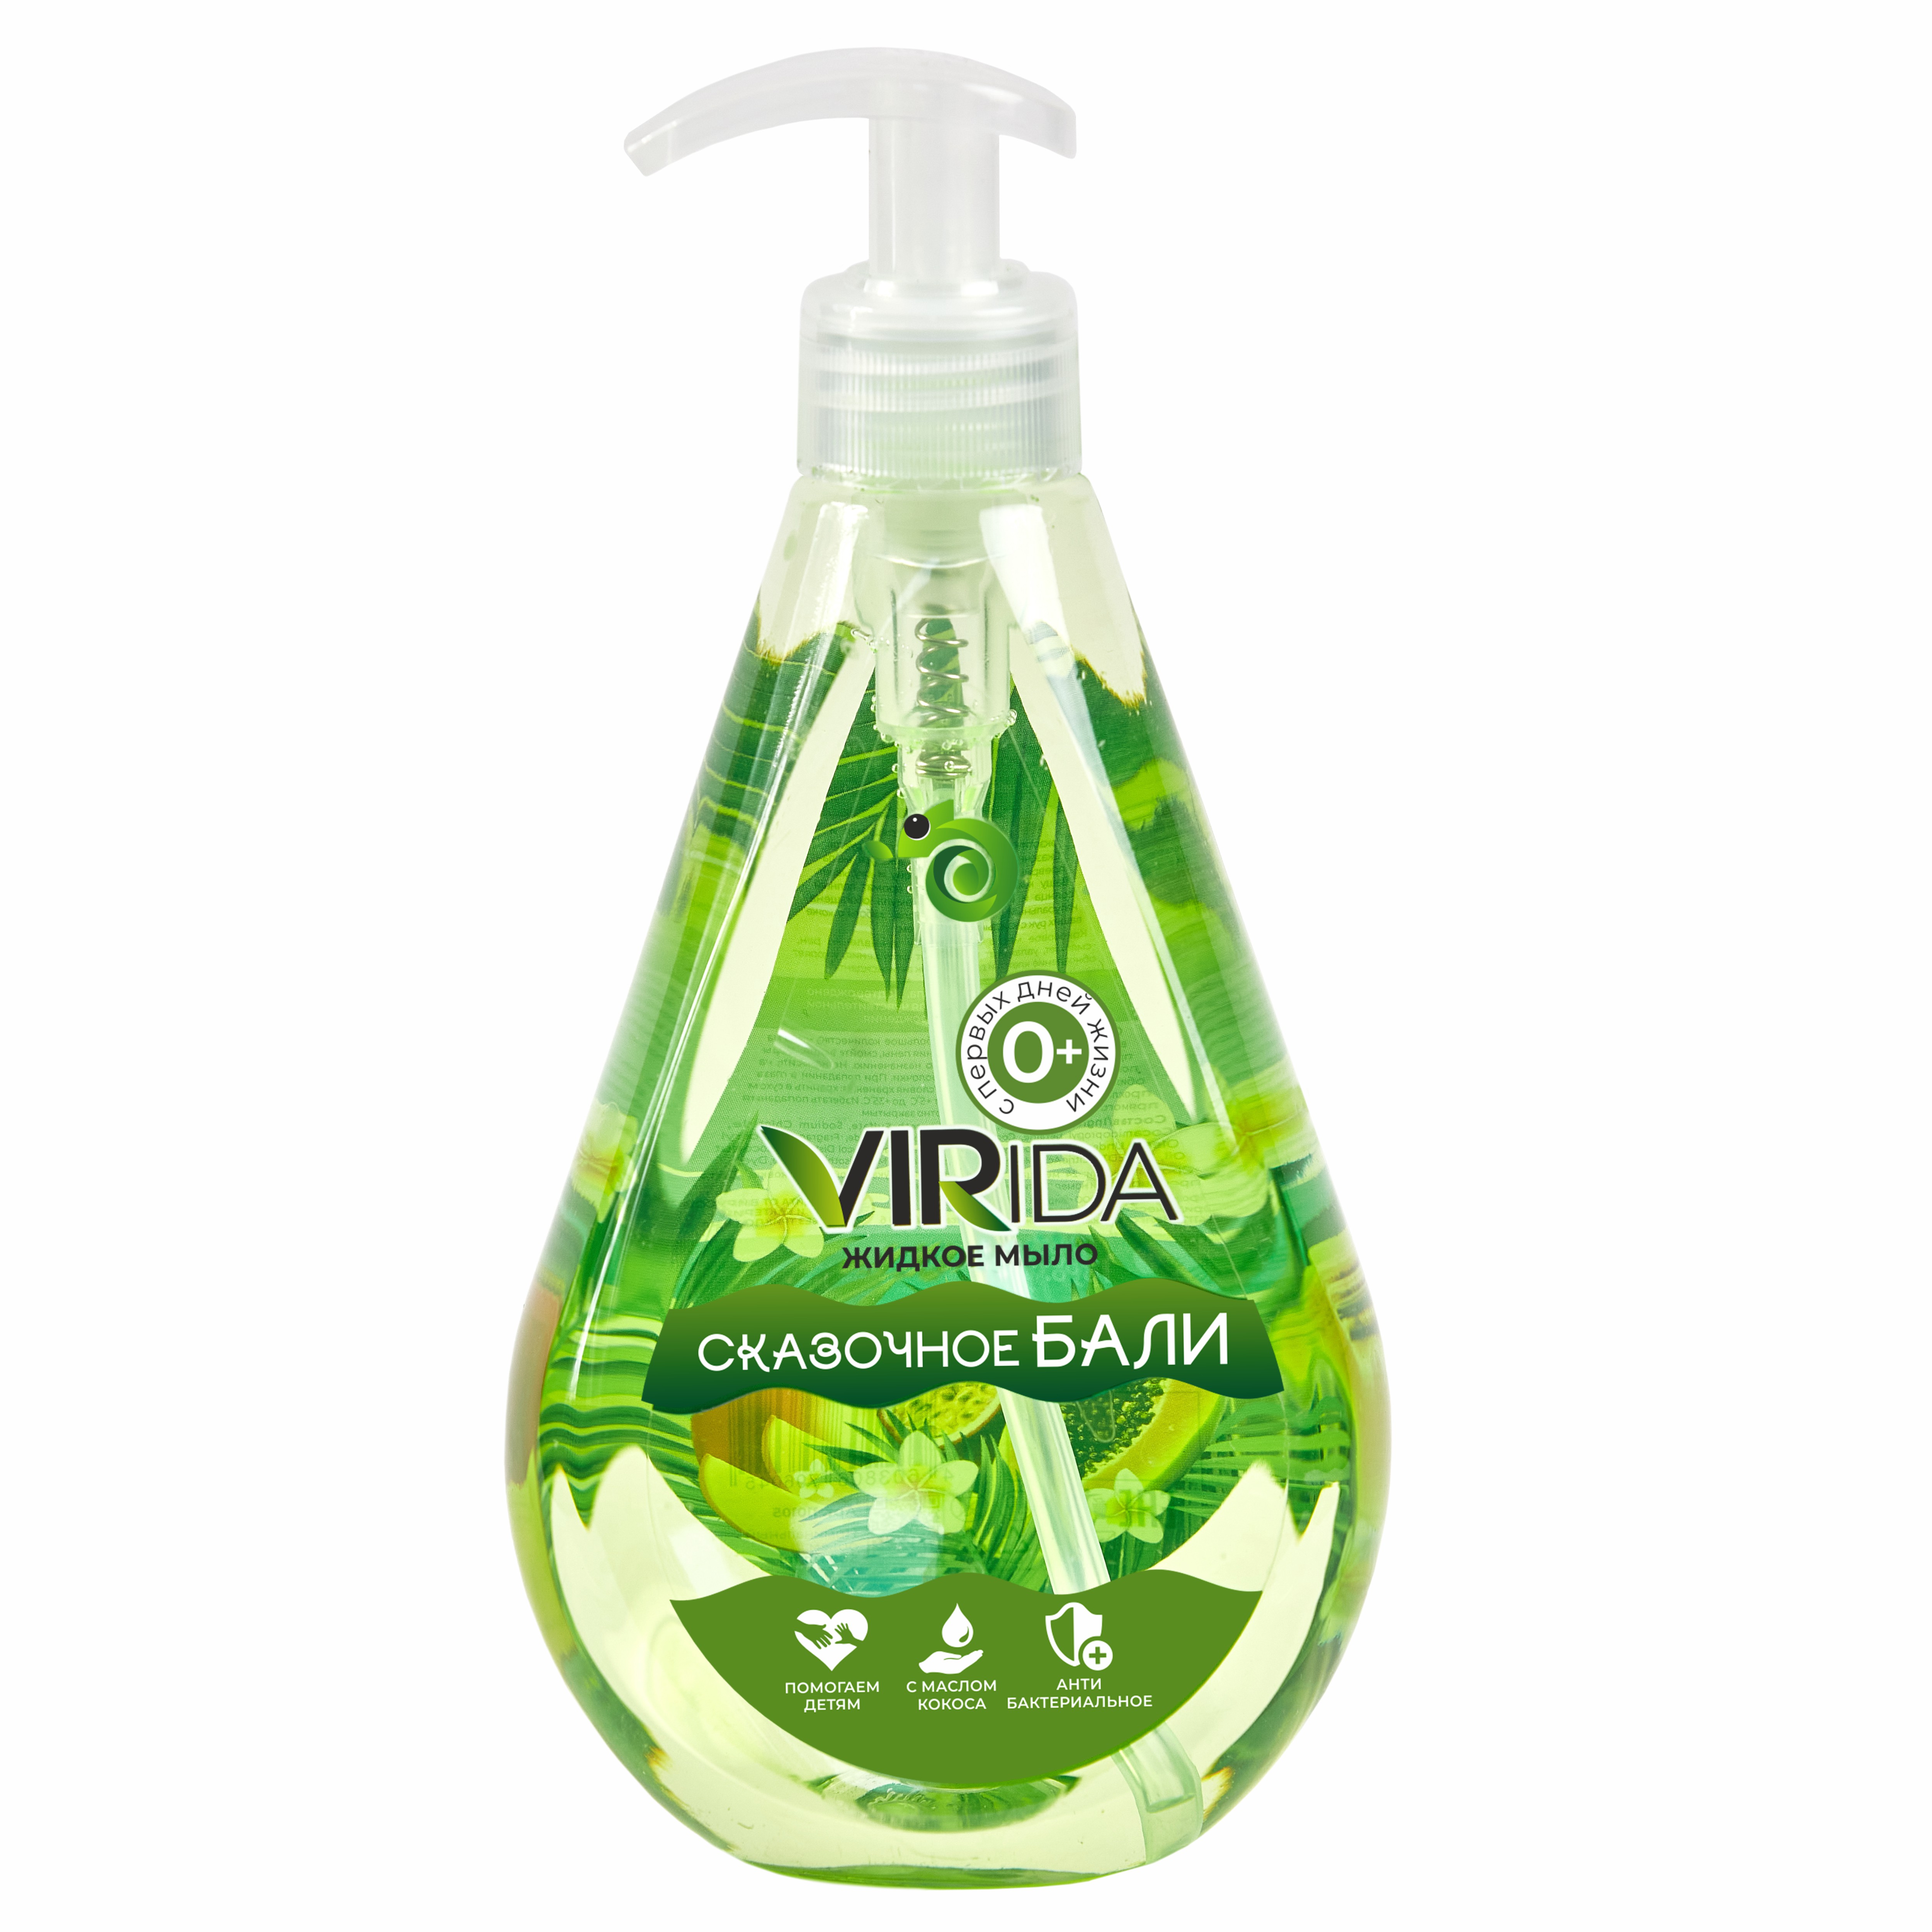 Жидкое мыло VIRida Сказочное Бали жидкое мыло новая заря чайное дерево с антибактериальным эффектом 455 мл